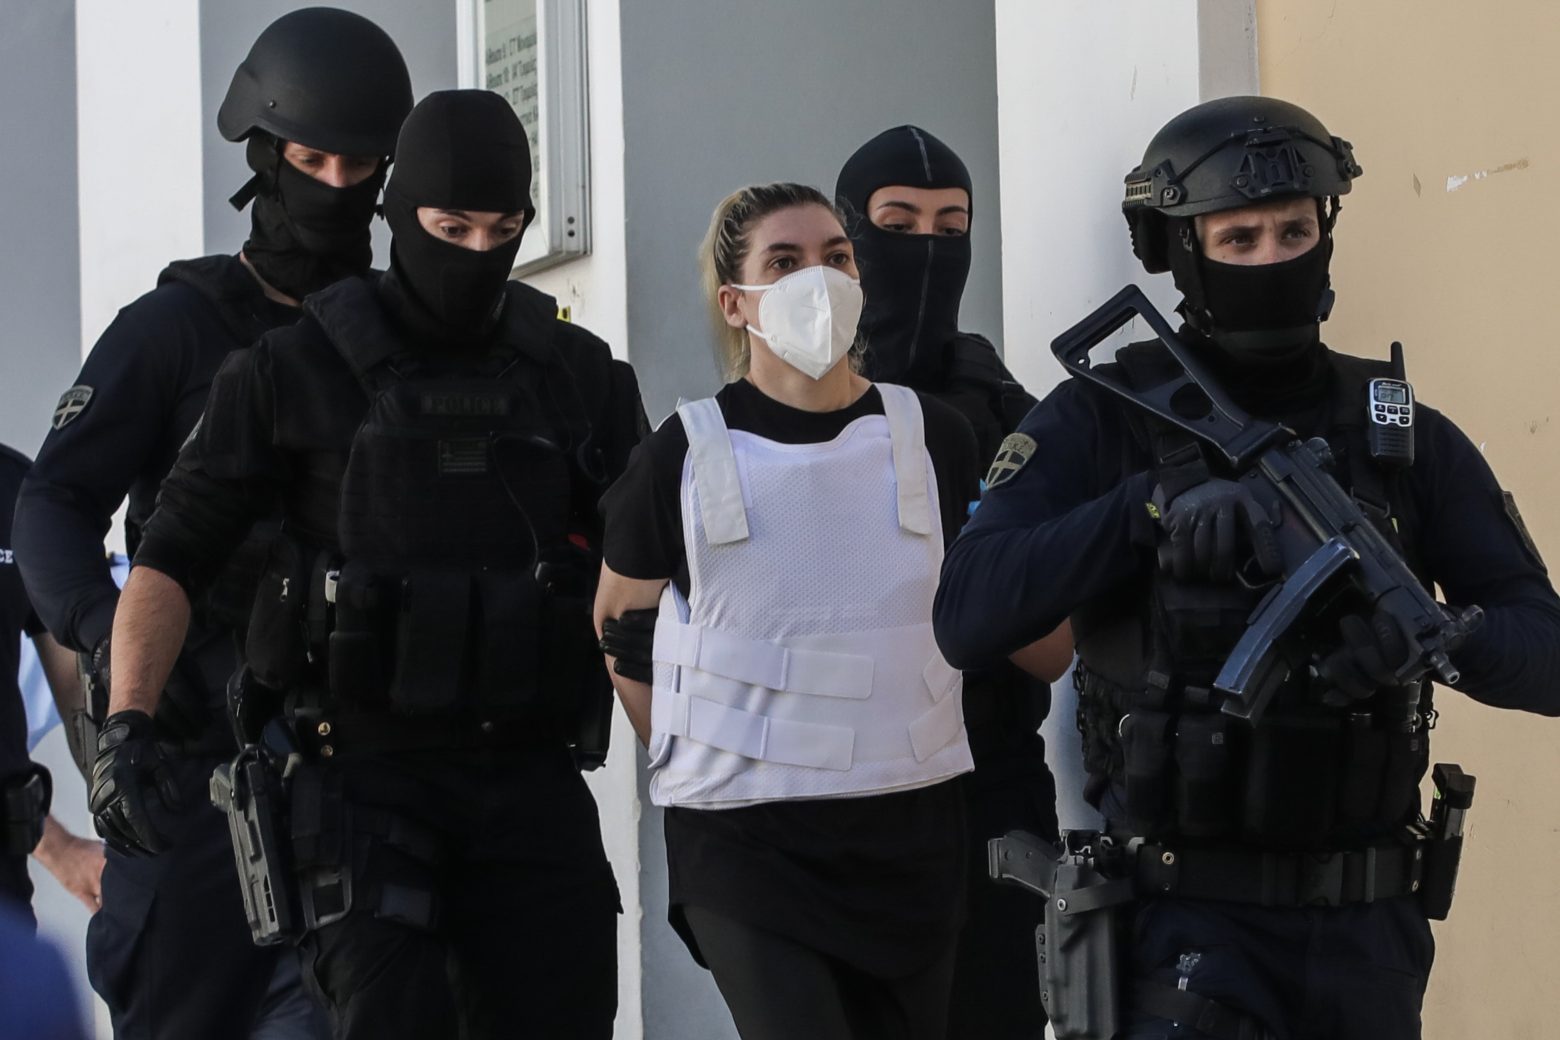 Ρούλα Πισπιρίγκου: Επικοινώνησε το καλοκαίρι με ιατροδικαστή μέσα από τη φυλακή - Τι τον ρώτησε για την κεταμίνη